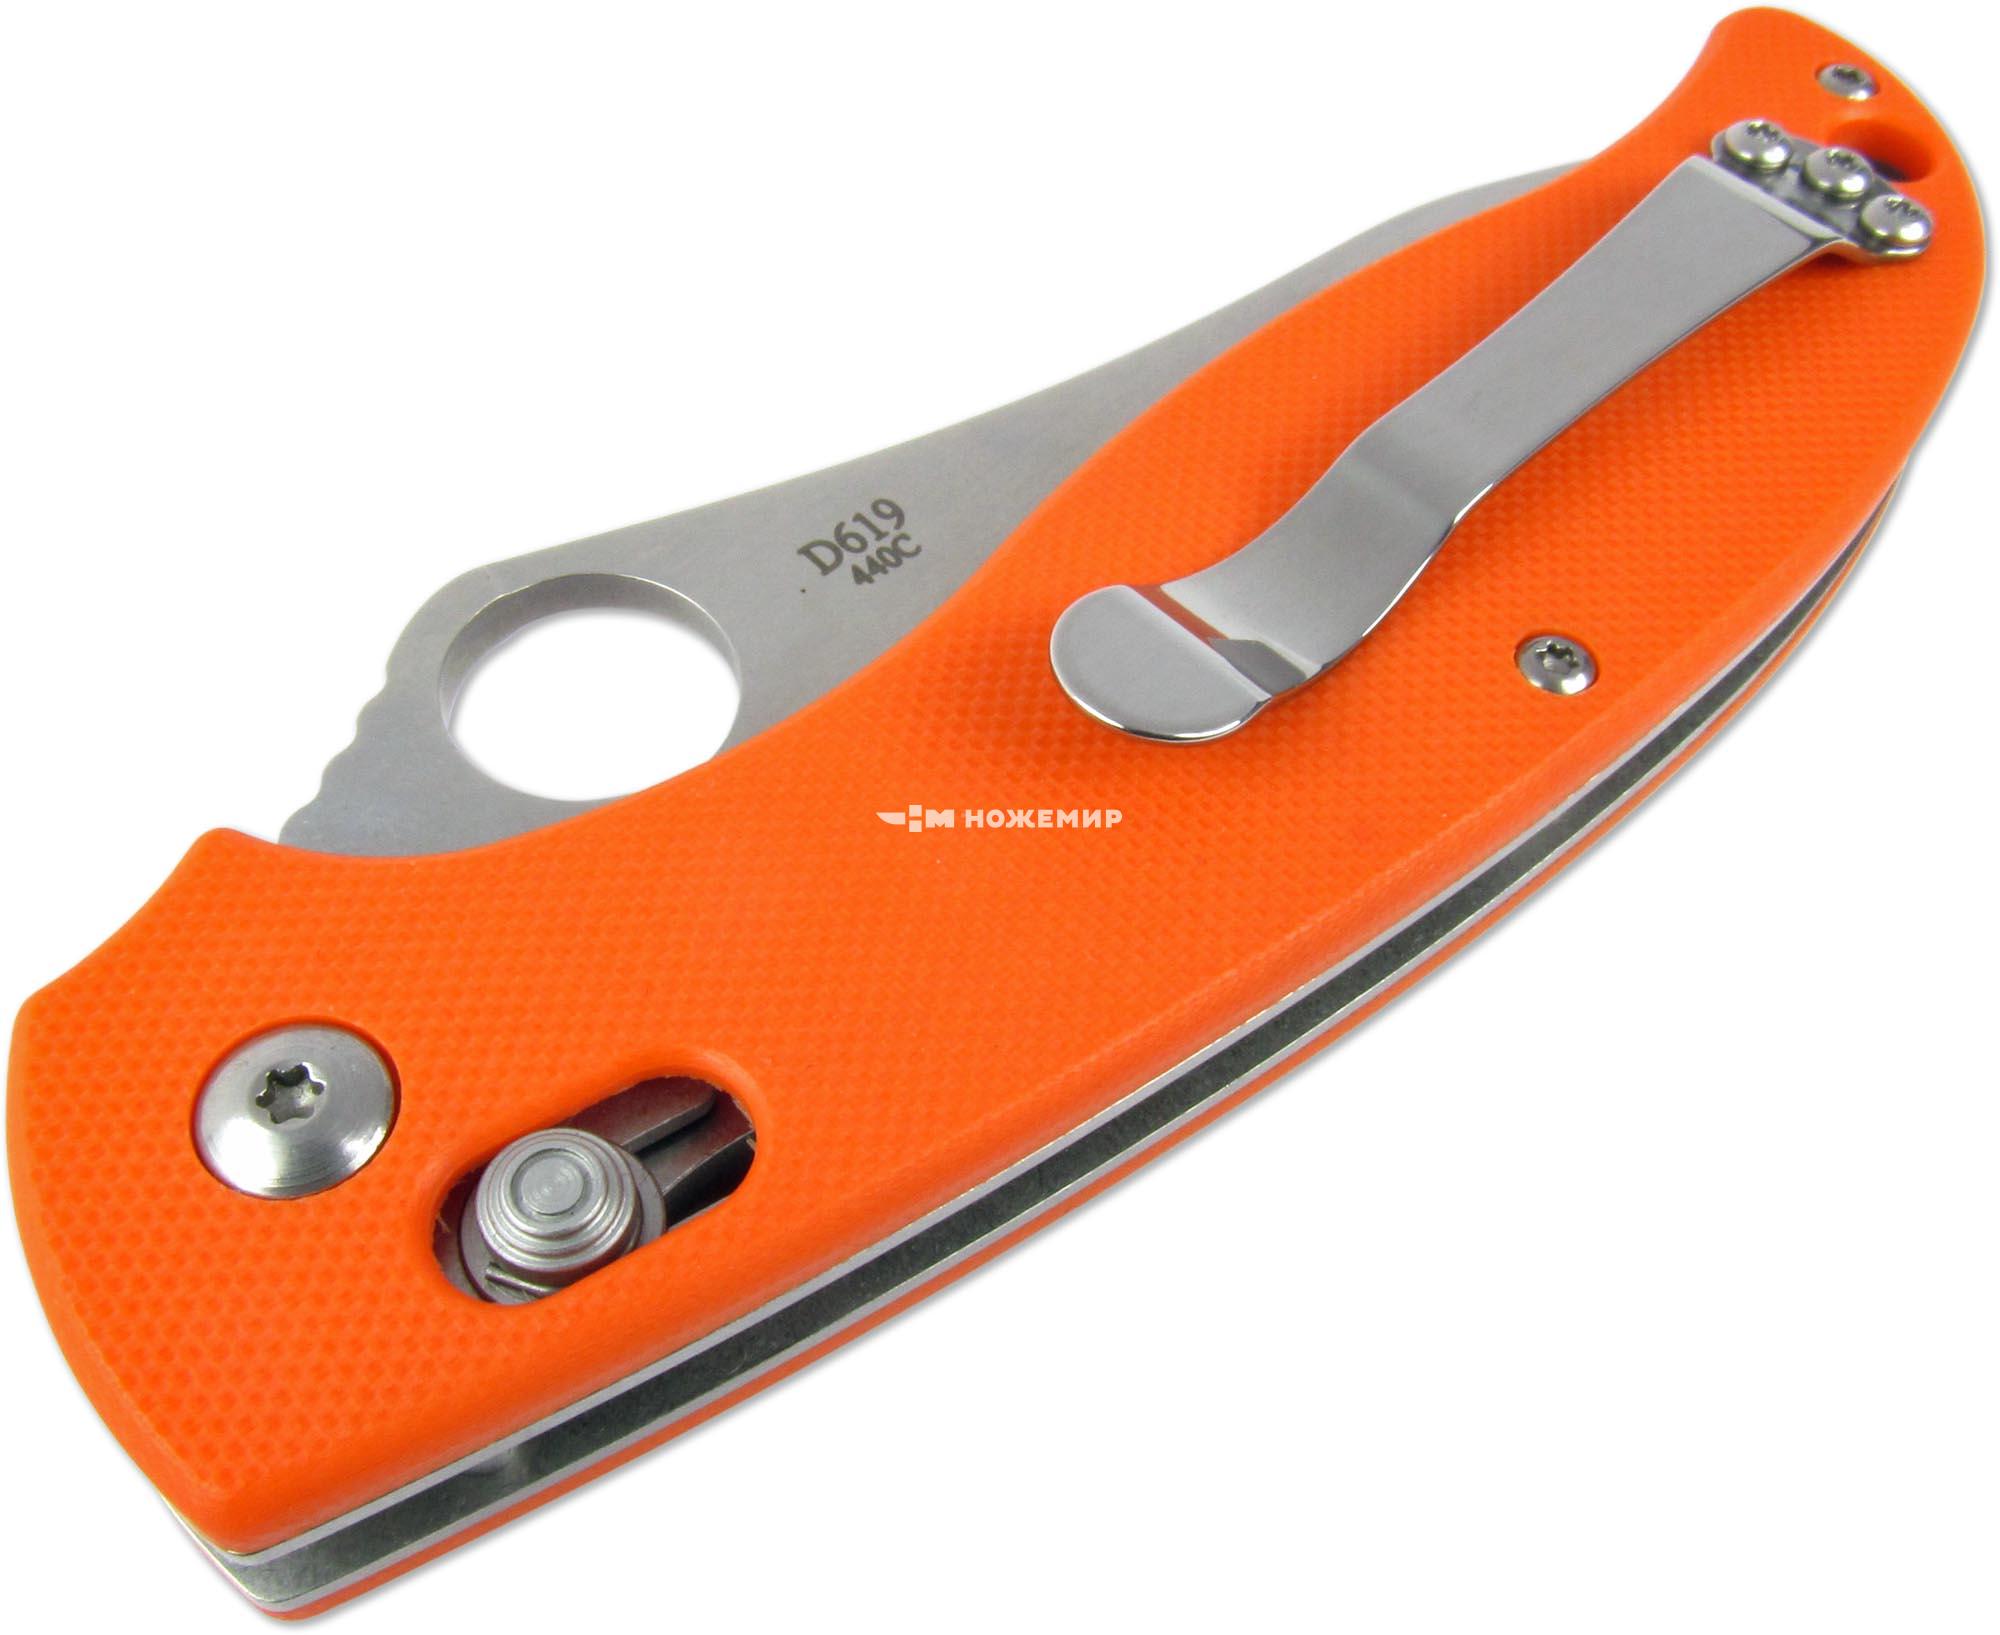 Нож складной с клинком из стали 440C и оранжевой рукоятью G-10 DAOKE D619o